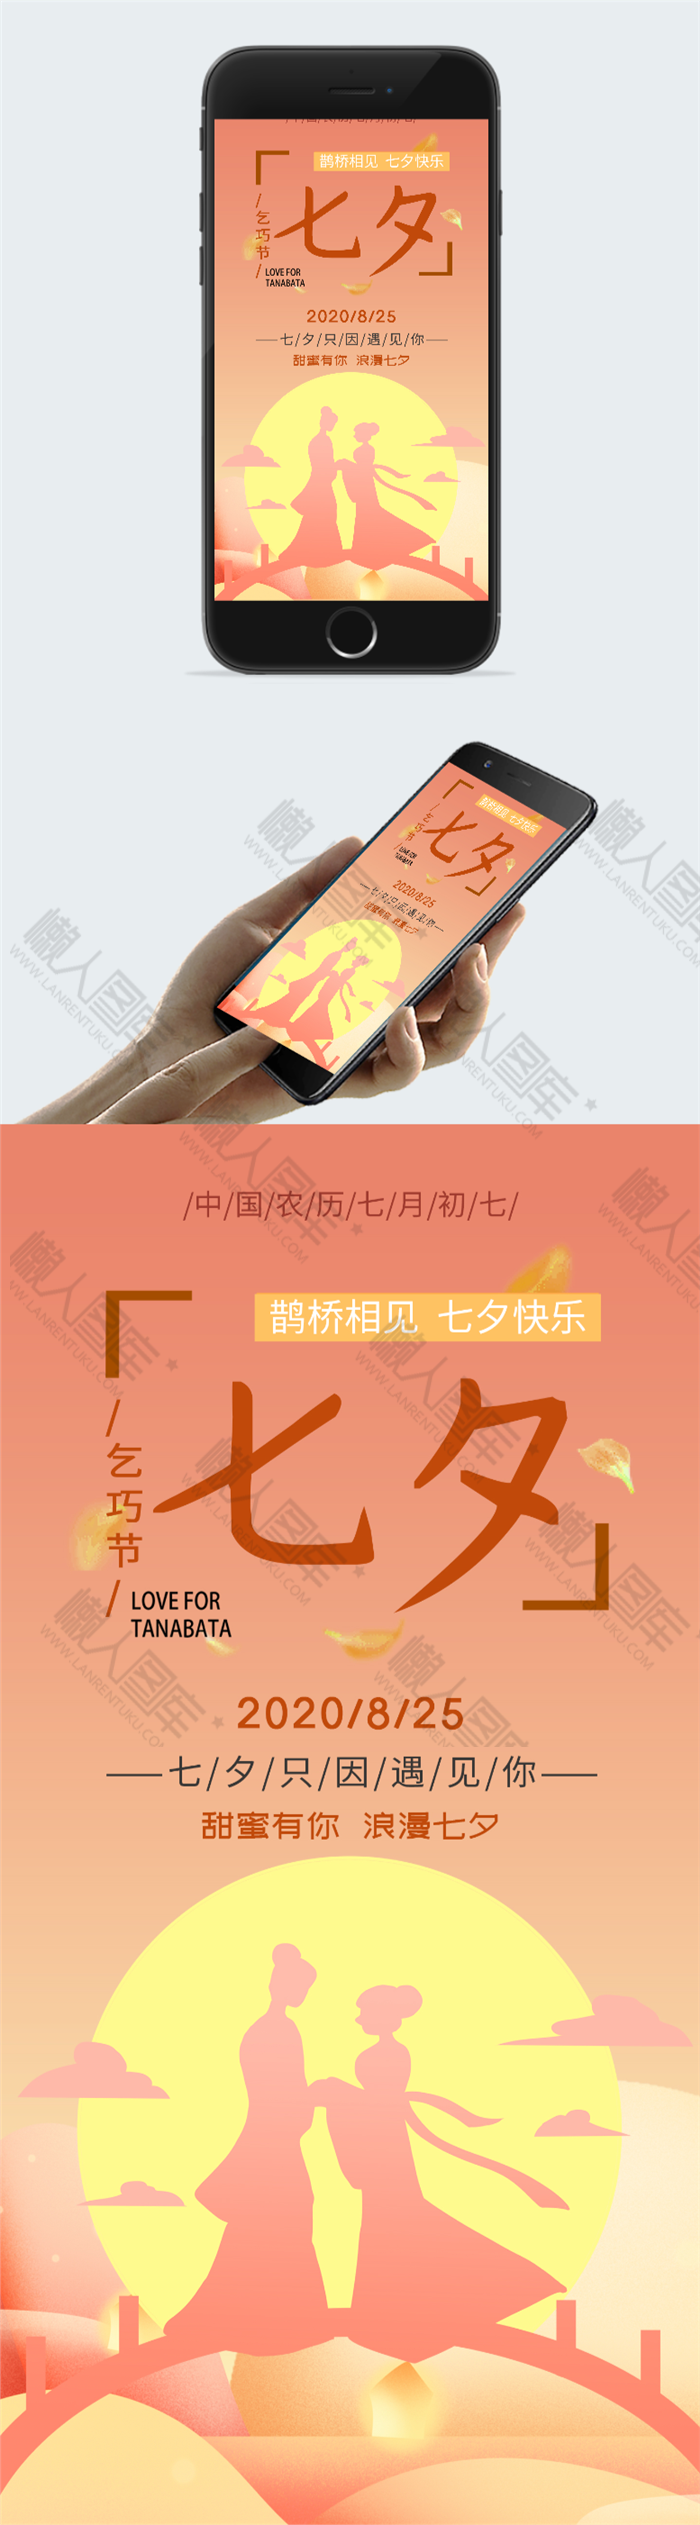 暖色调浪漫七夕节宣传海报